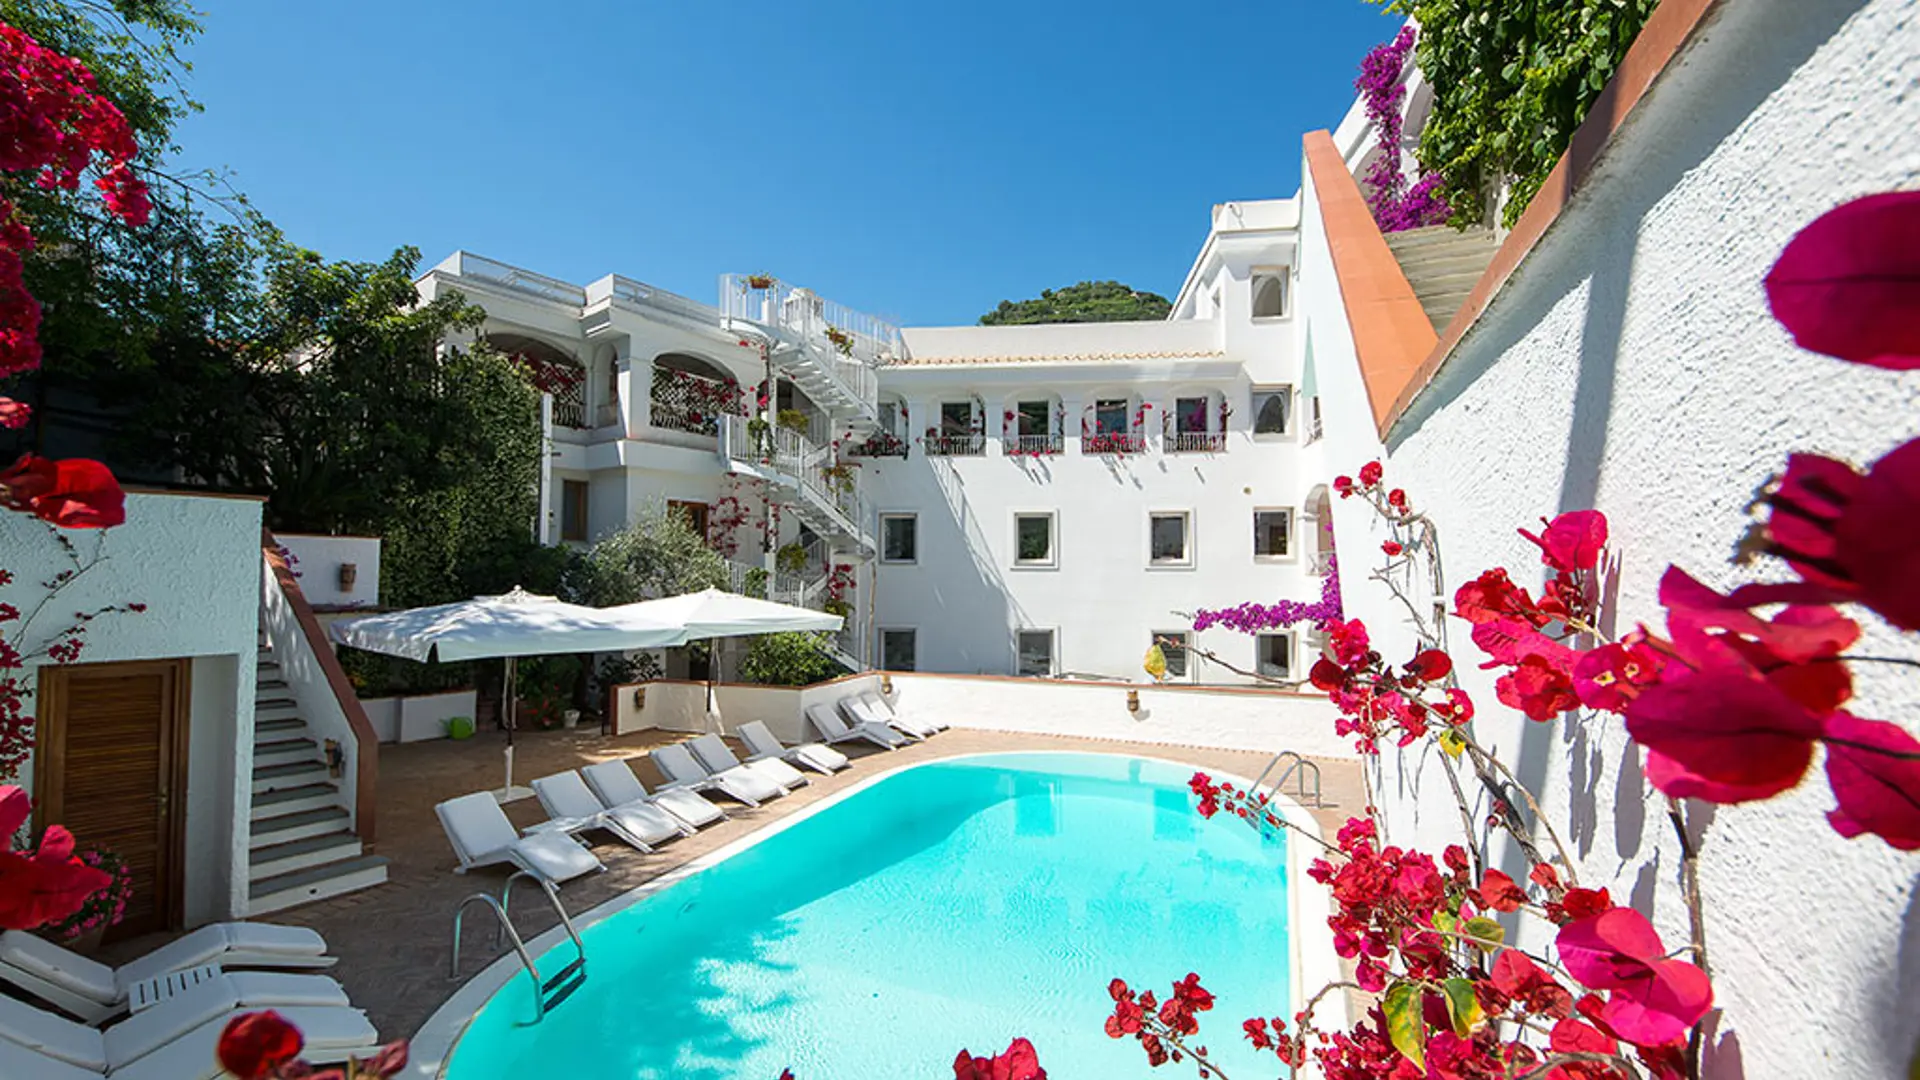 Hotel Villa Romana har et basseng og en flott beliggenhet midt i Minori